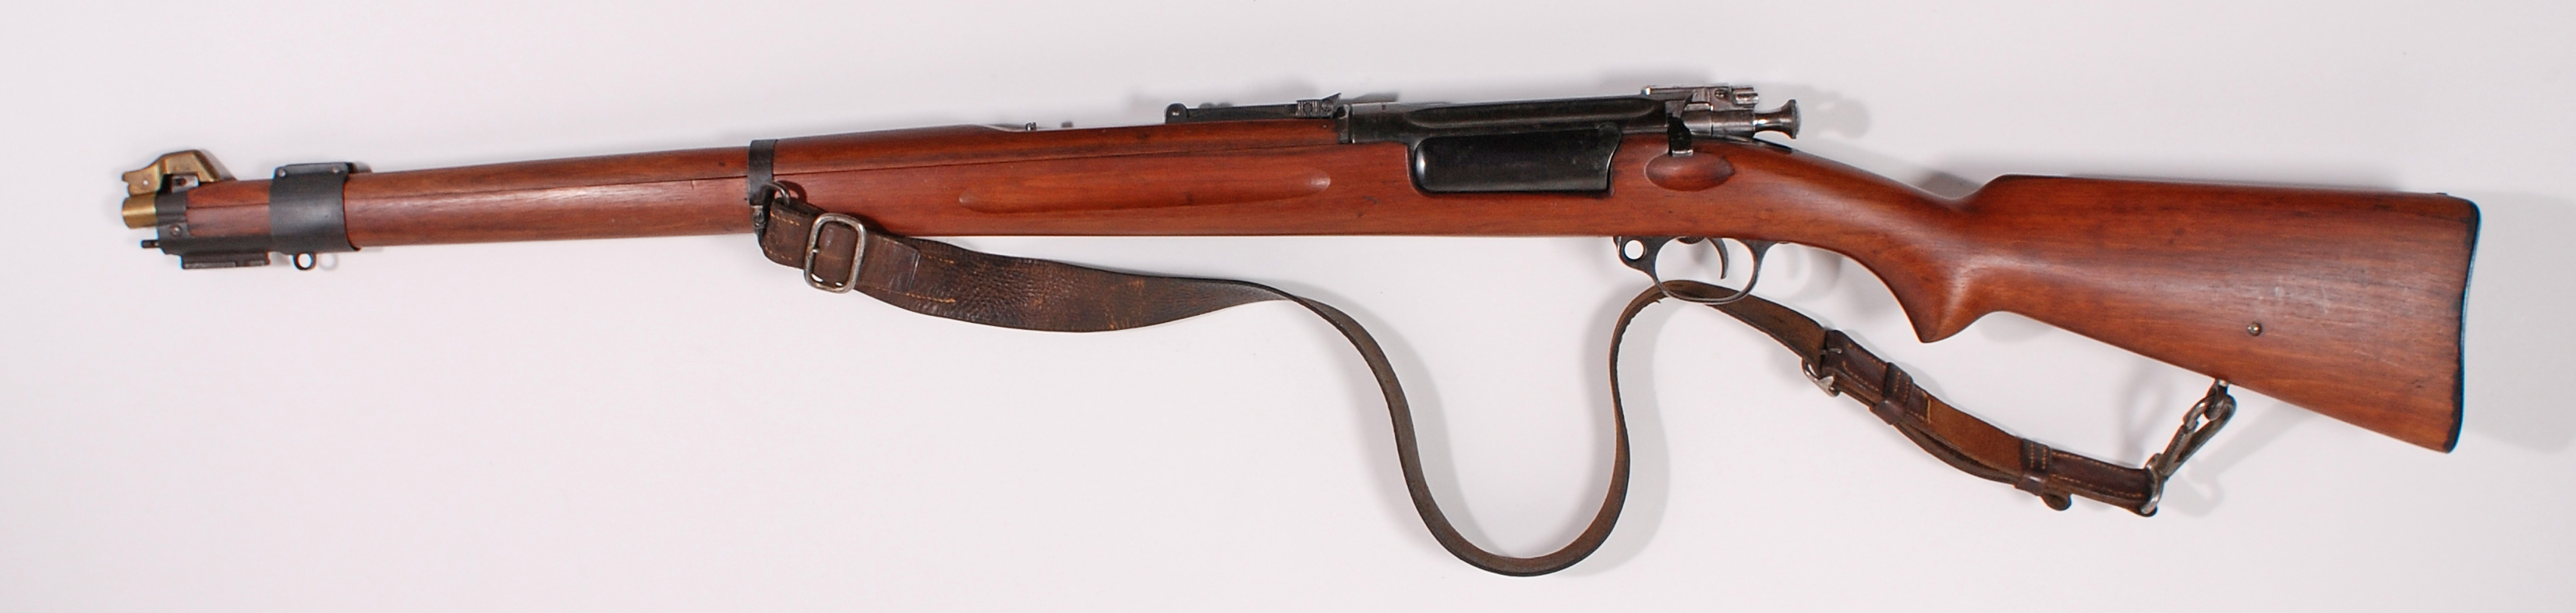 ./guns/rifle/bilder/Rifle-Kongsberg-Krag-M1912-16-5447-1.jpg